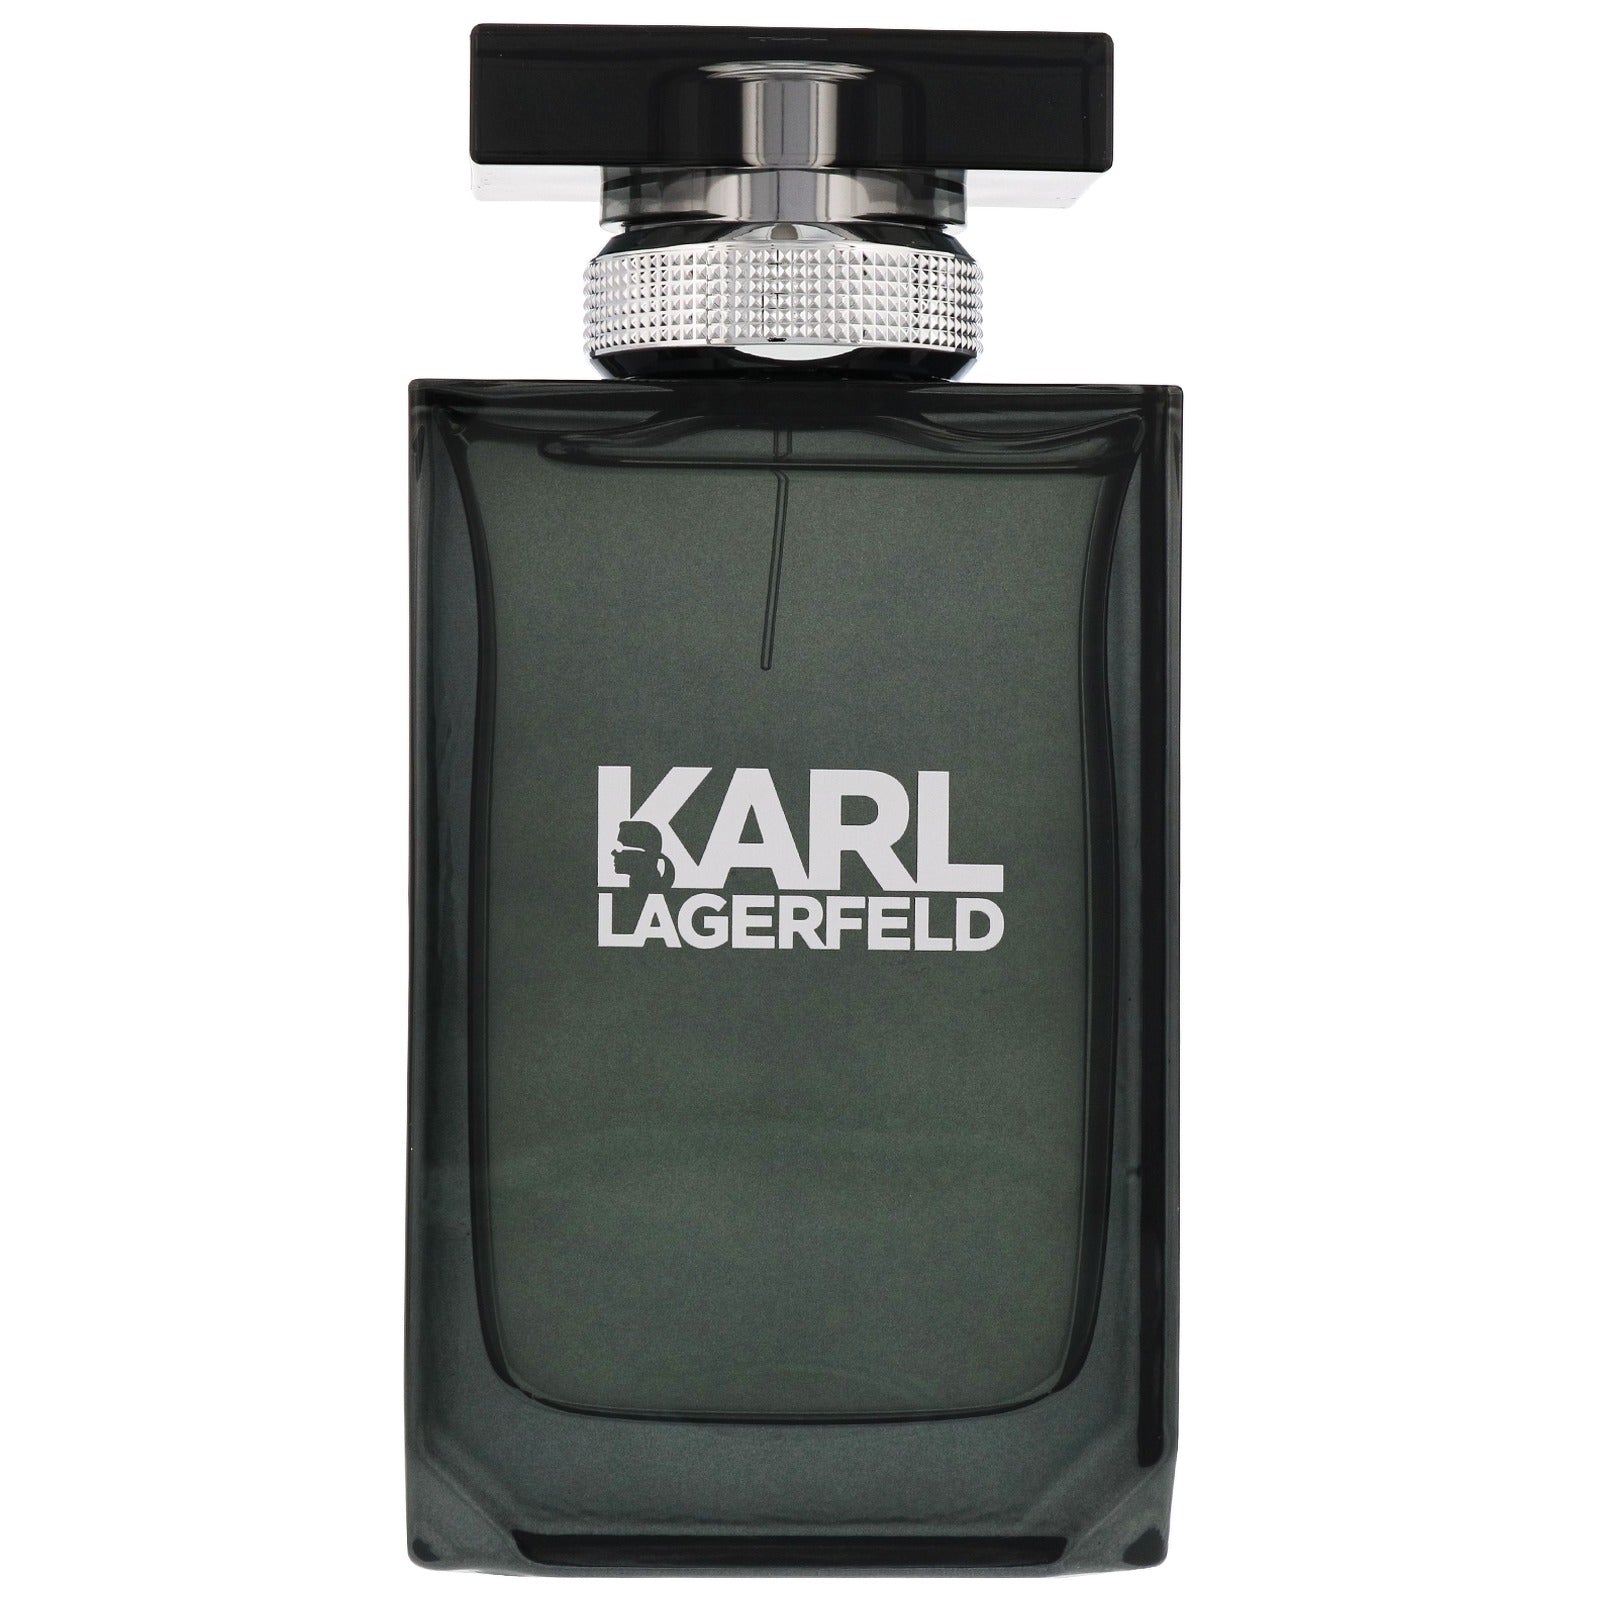 Karl Lagerfeld Pour Homme Eau de Toilette Spray 100ml - LookincredibleKarl Lagerfeld3386460059183